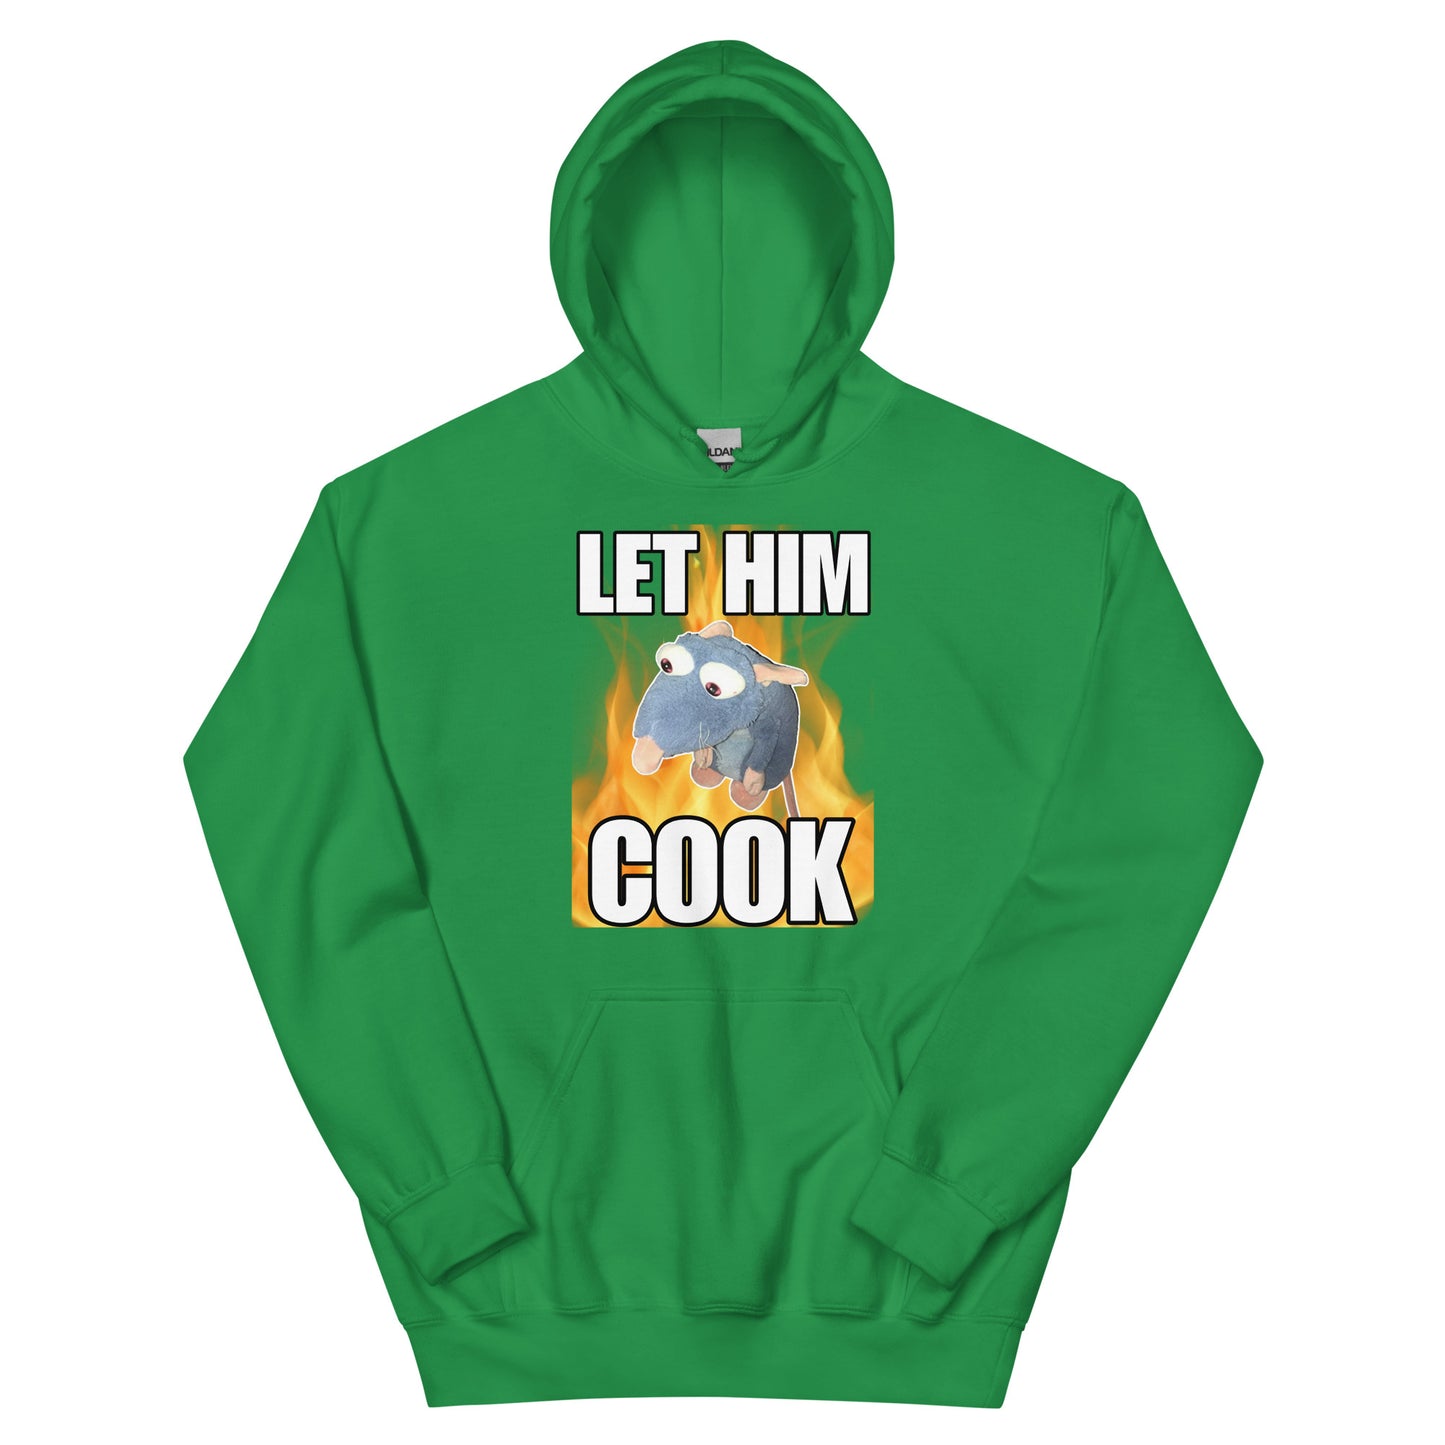 Let him Cook Hoodie